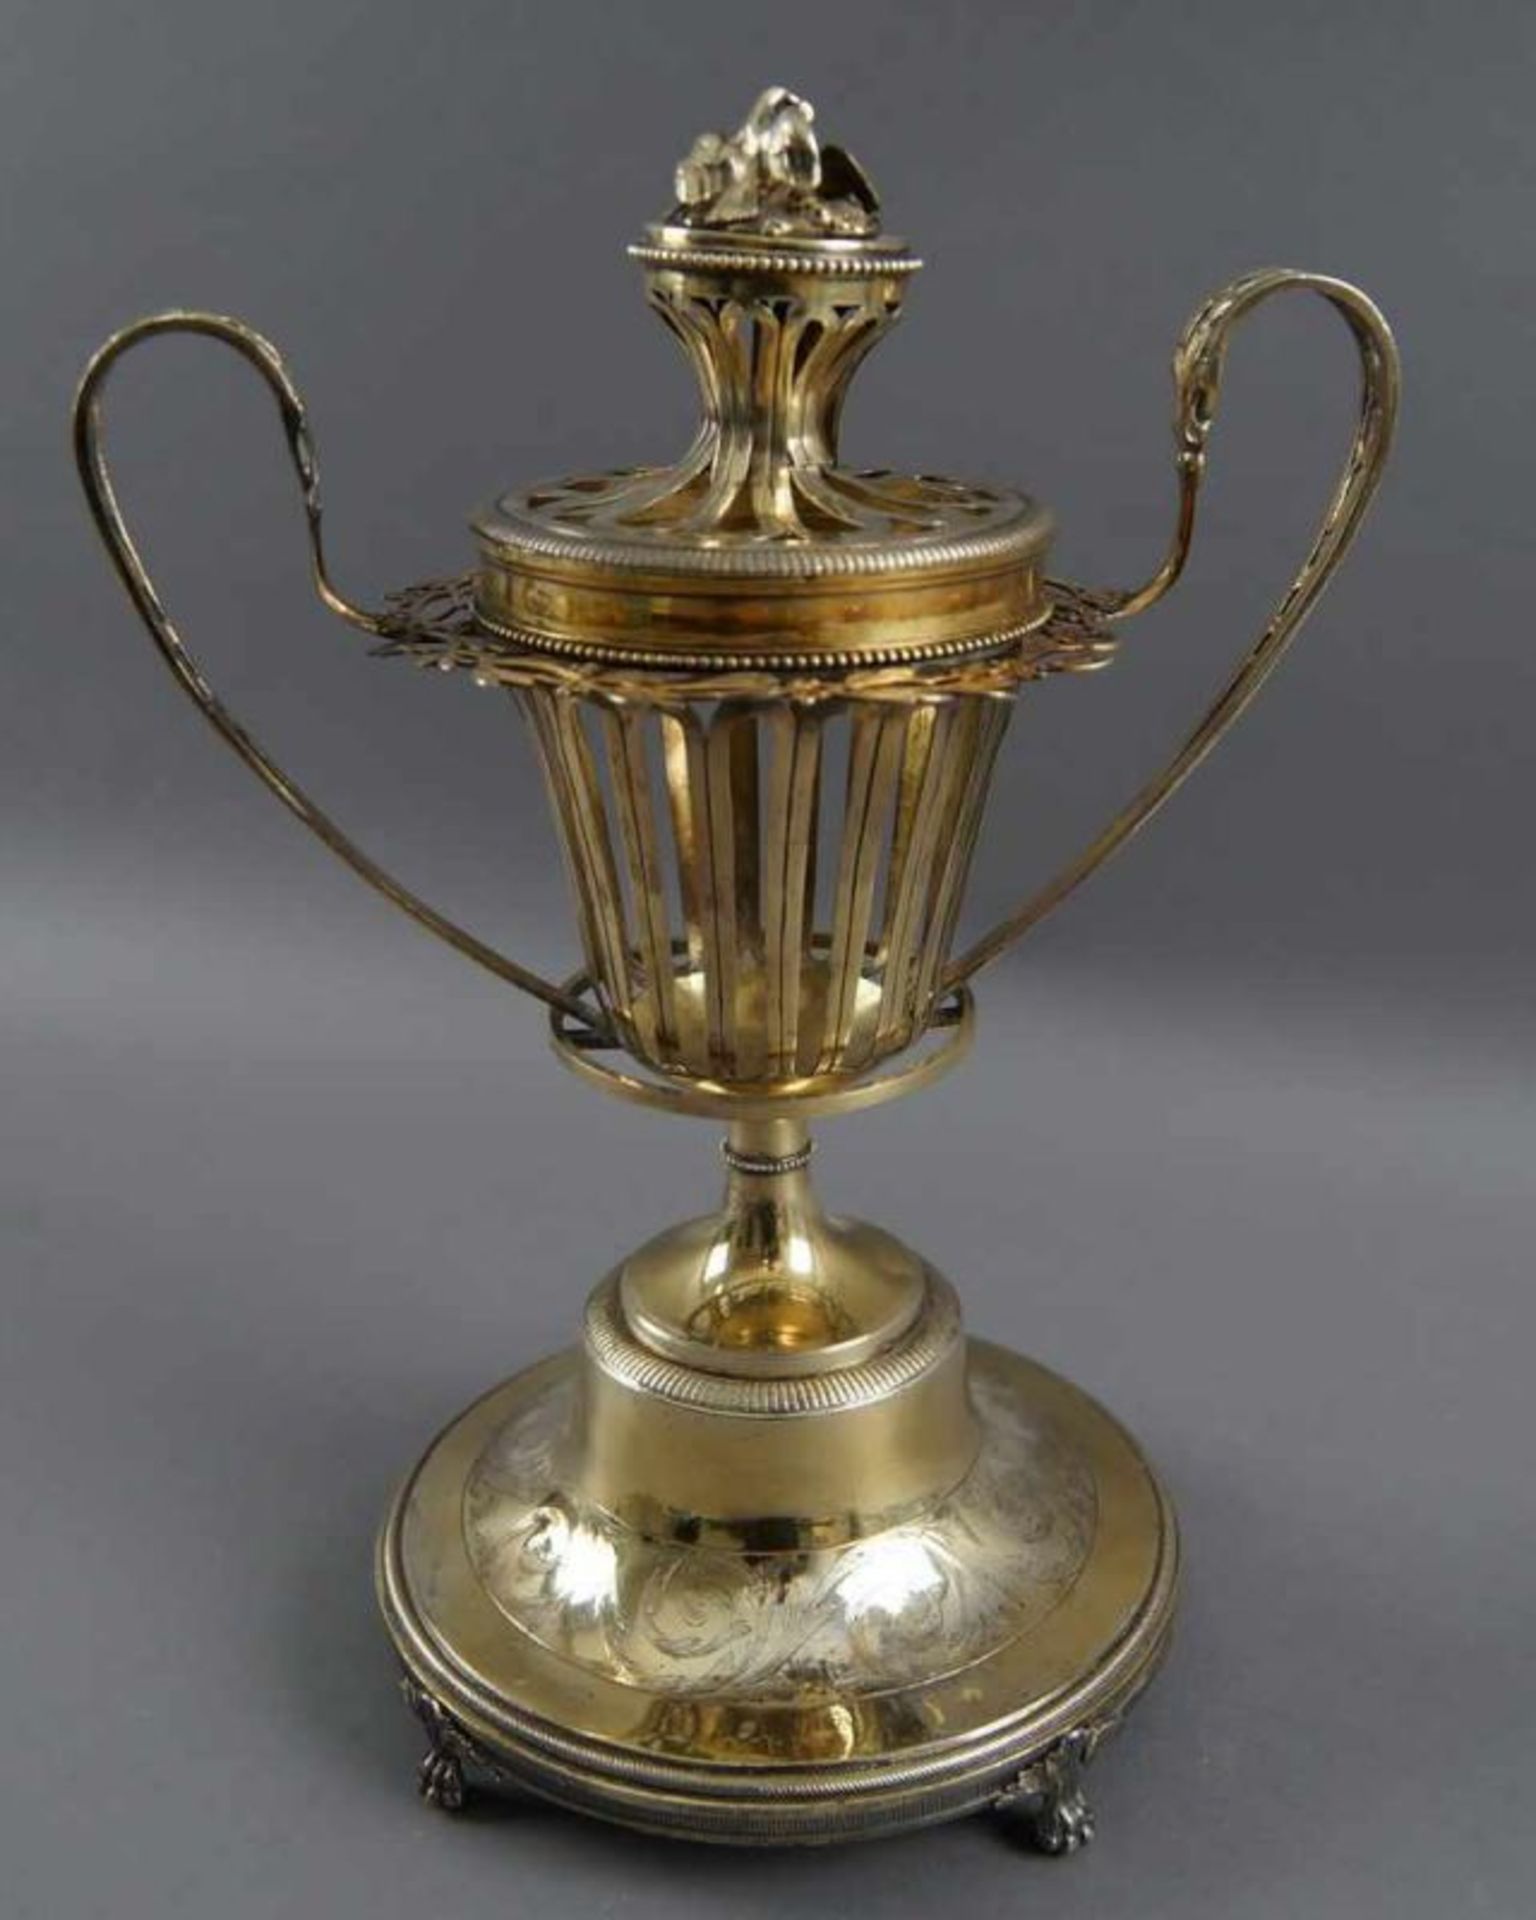 Herrschaftlicher Taufpokal (christening cup), durchbrochen gearbeitet, mehrfach gepunzt, datiert - Bild 6 aus 14